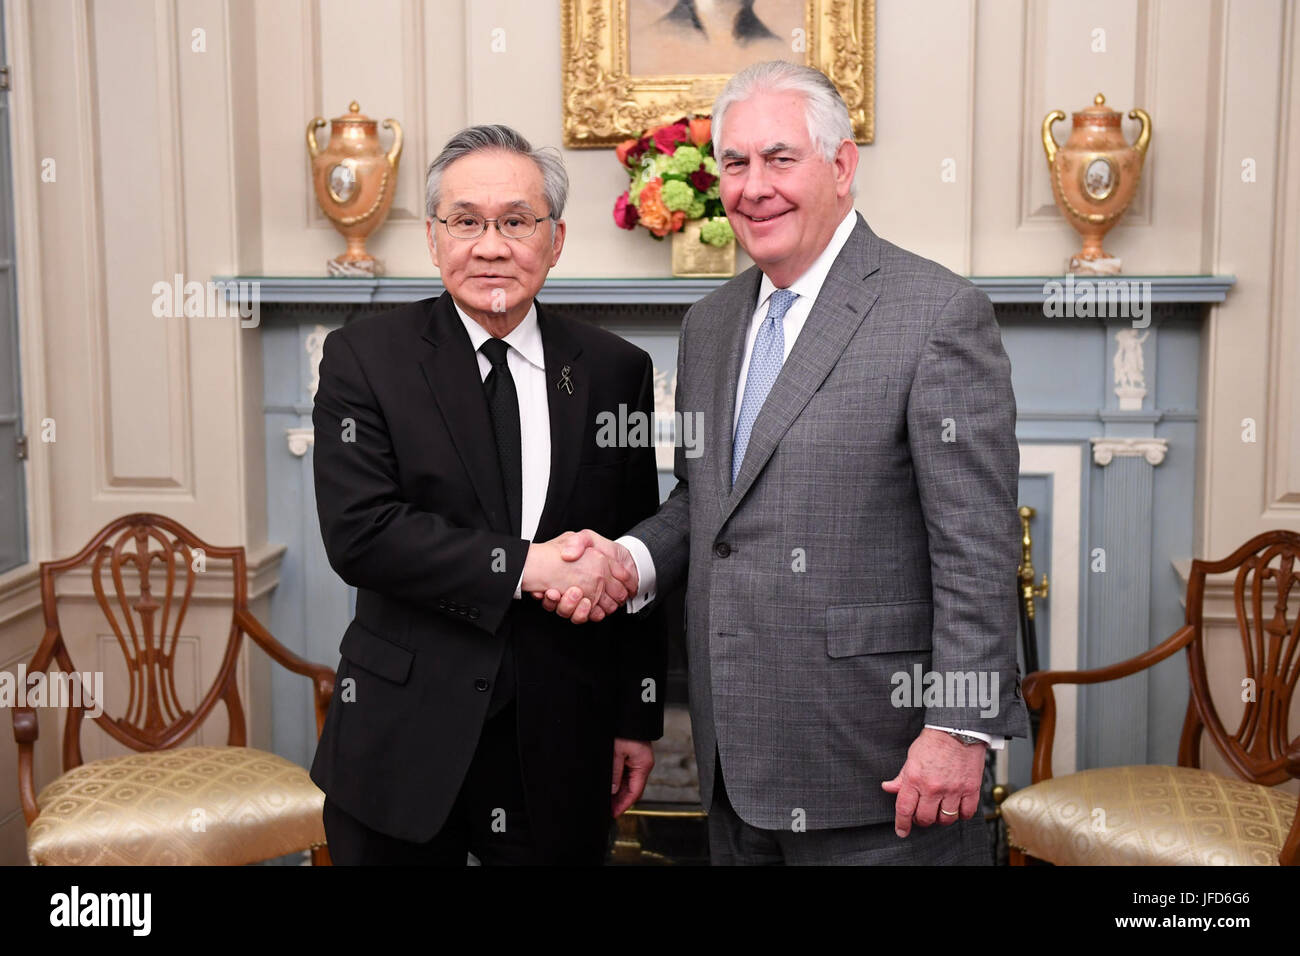 La secrétaire d'État des États-Unis, Rex Tillerson pose pour une photo avec le Ministre thaïlandais des affaires étrangères Don Pramudwinai avant leur réunion bilatérale au département d'État des États-Unis à Washington, D.C., le 4 mai 2017. Banque D'Images